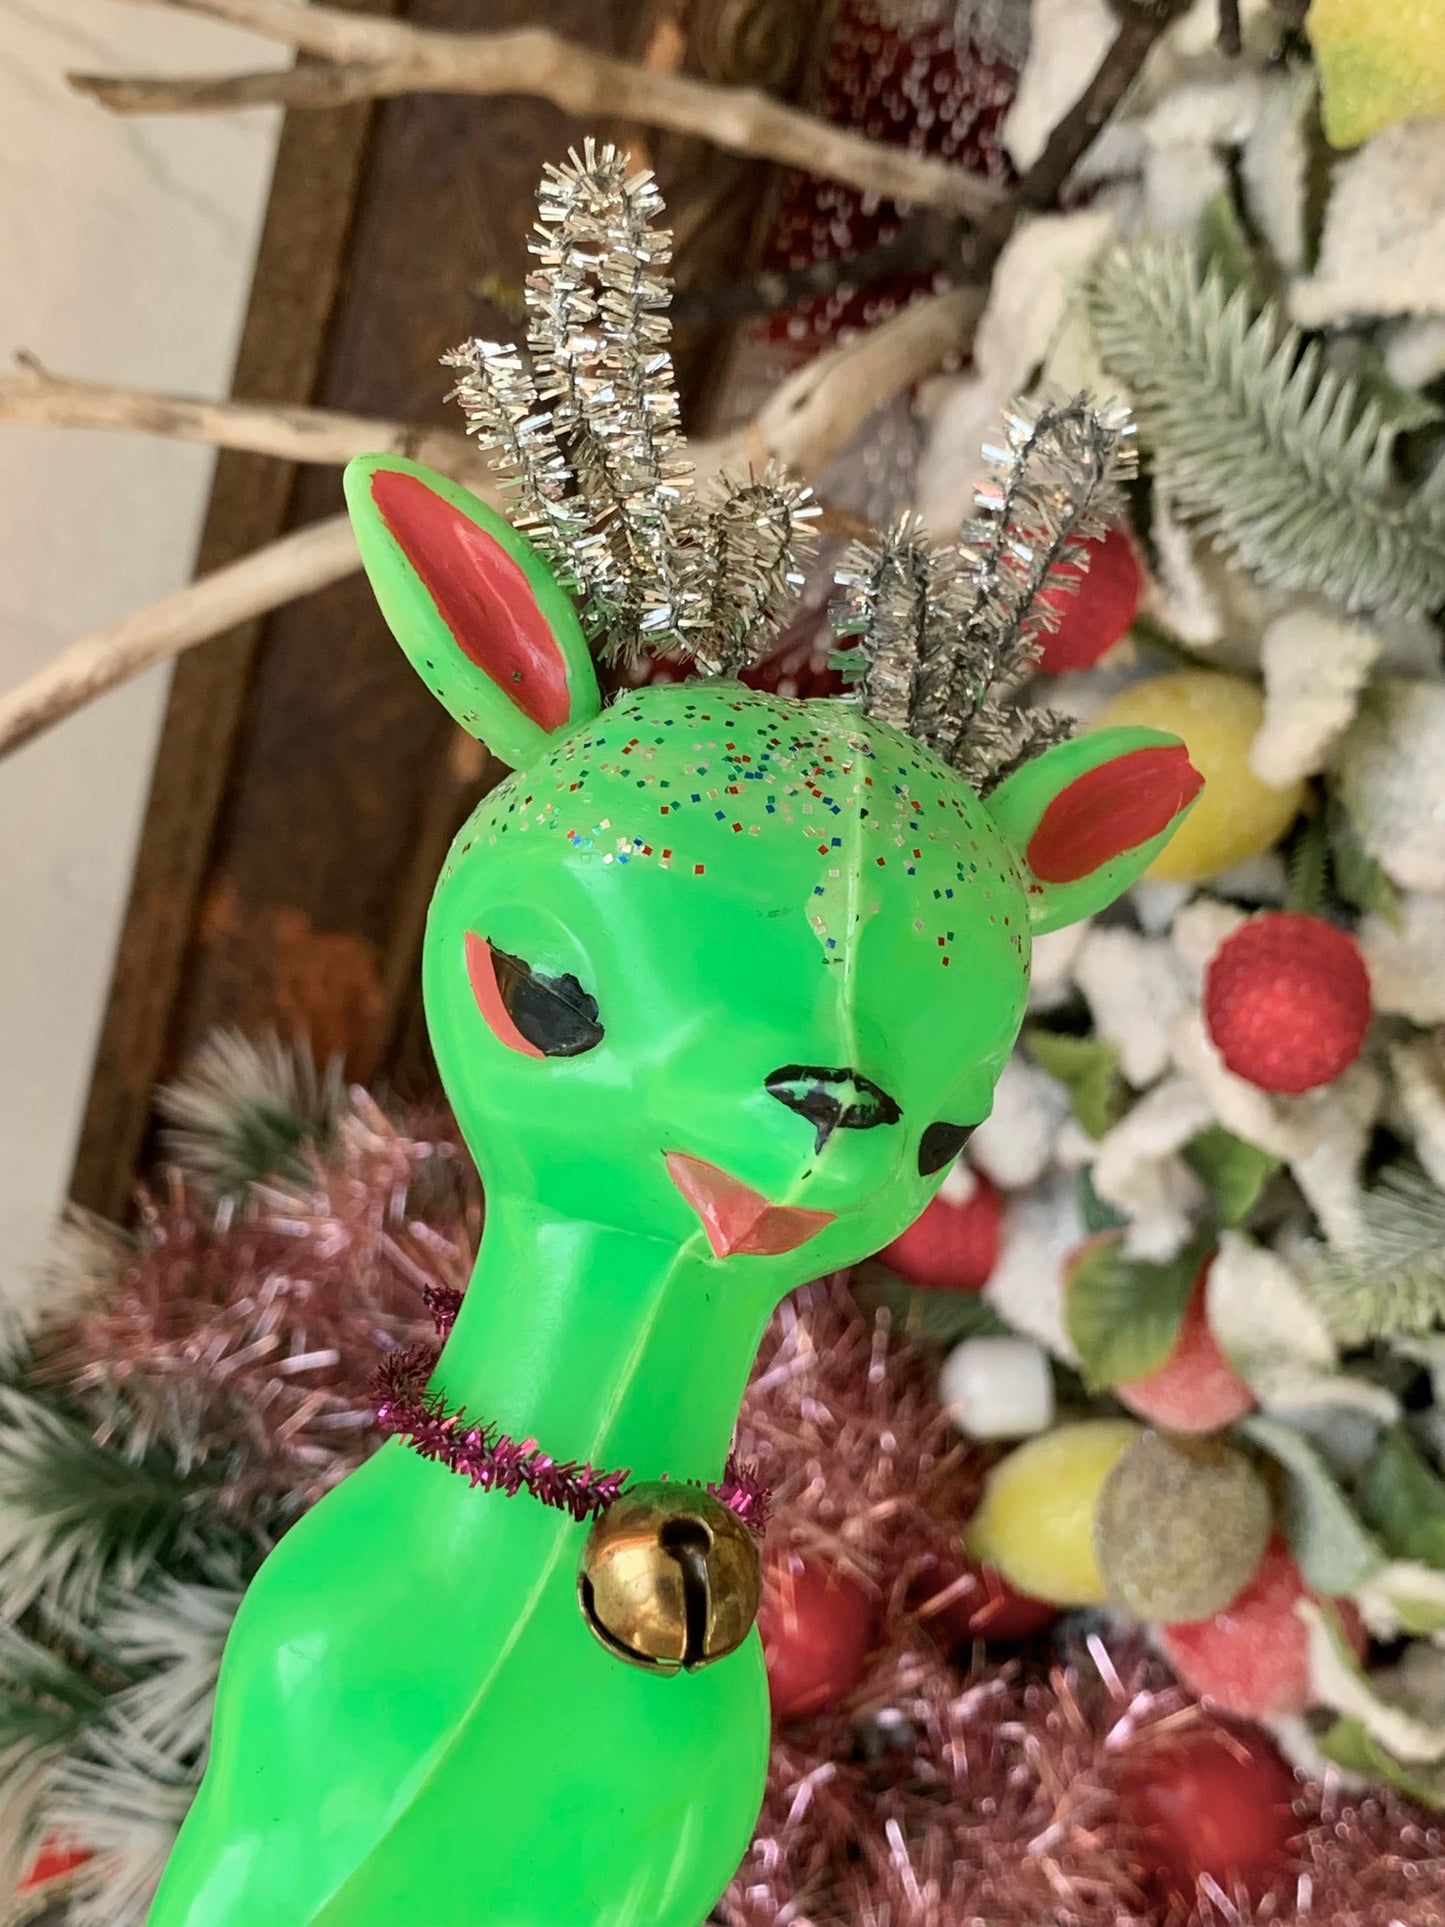 Vintage green plastic Christmas reindeer